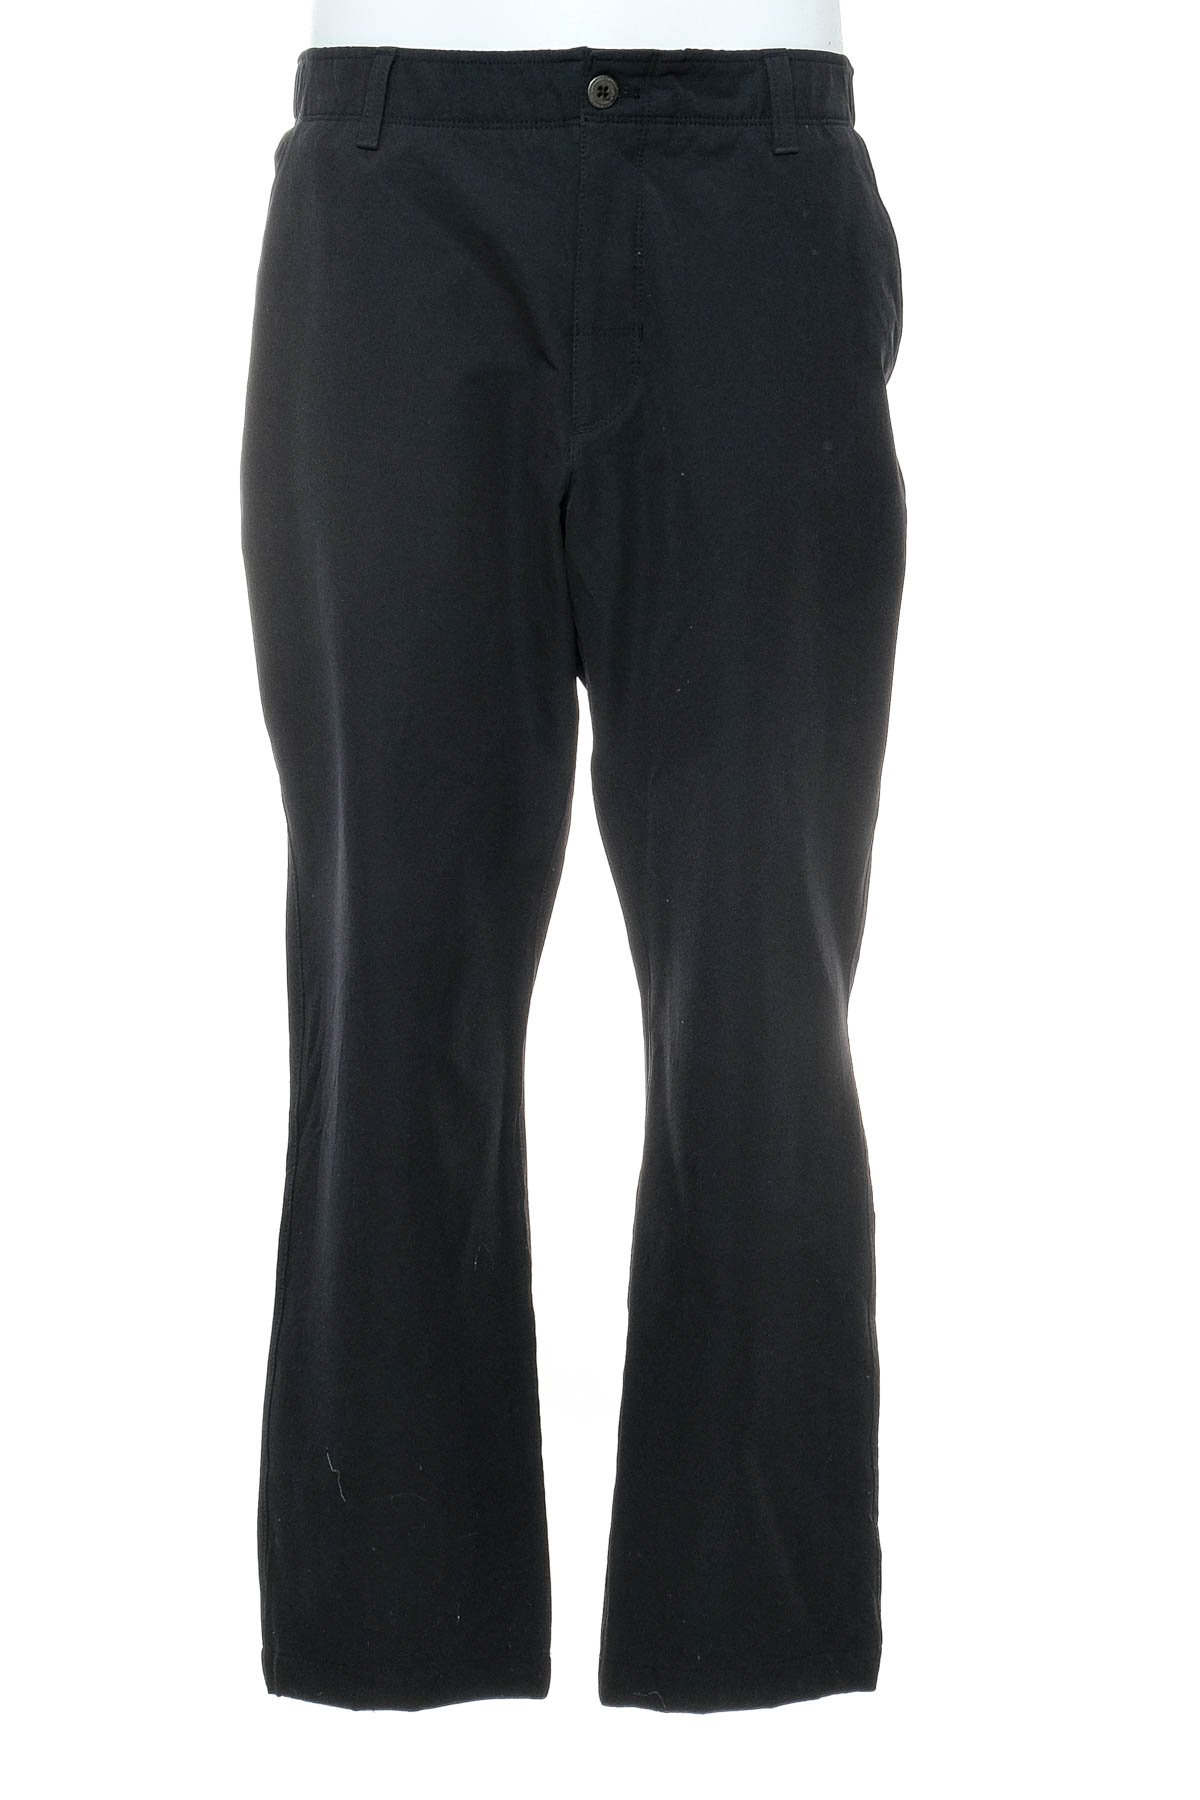 Pantalon pentru bărbați - UNDER ARMOUR - 0